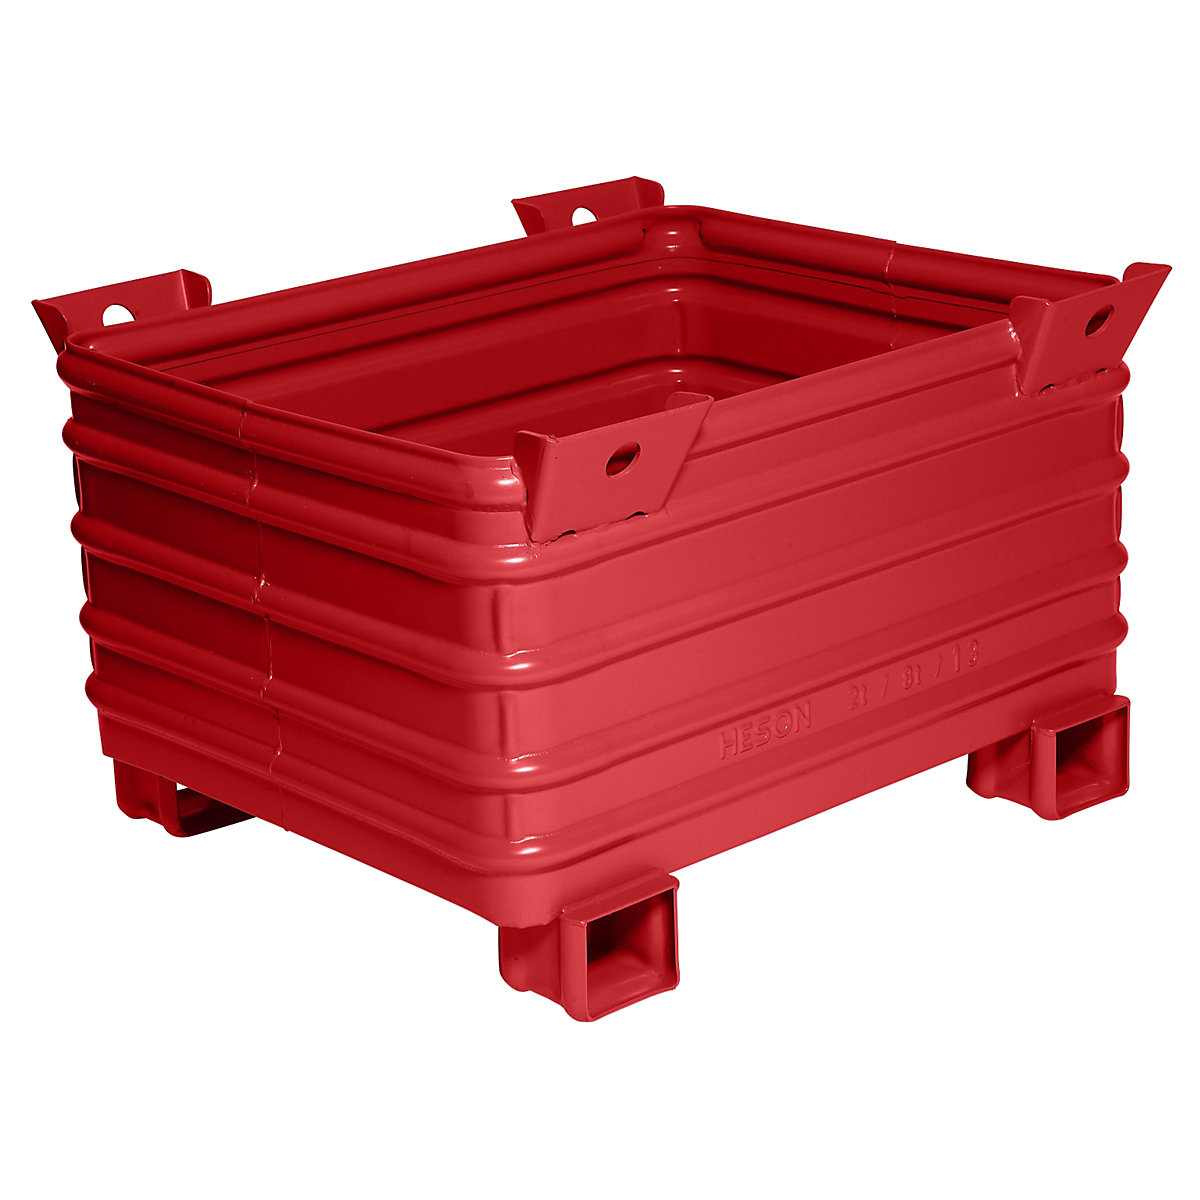 Heavy duty box pallet – Heson